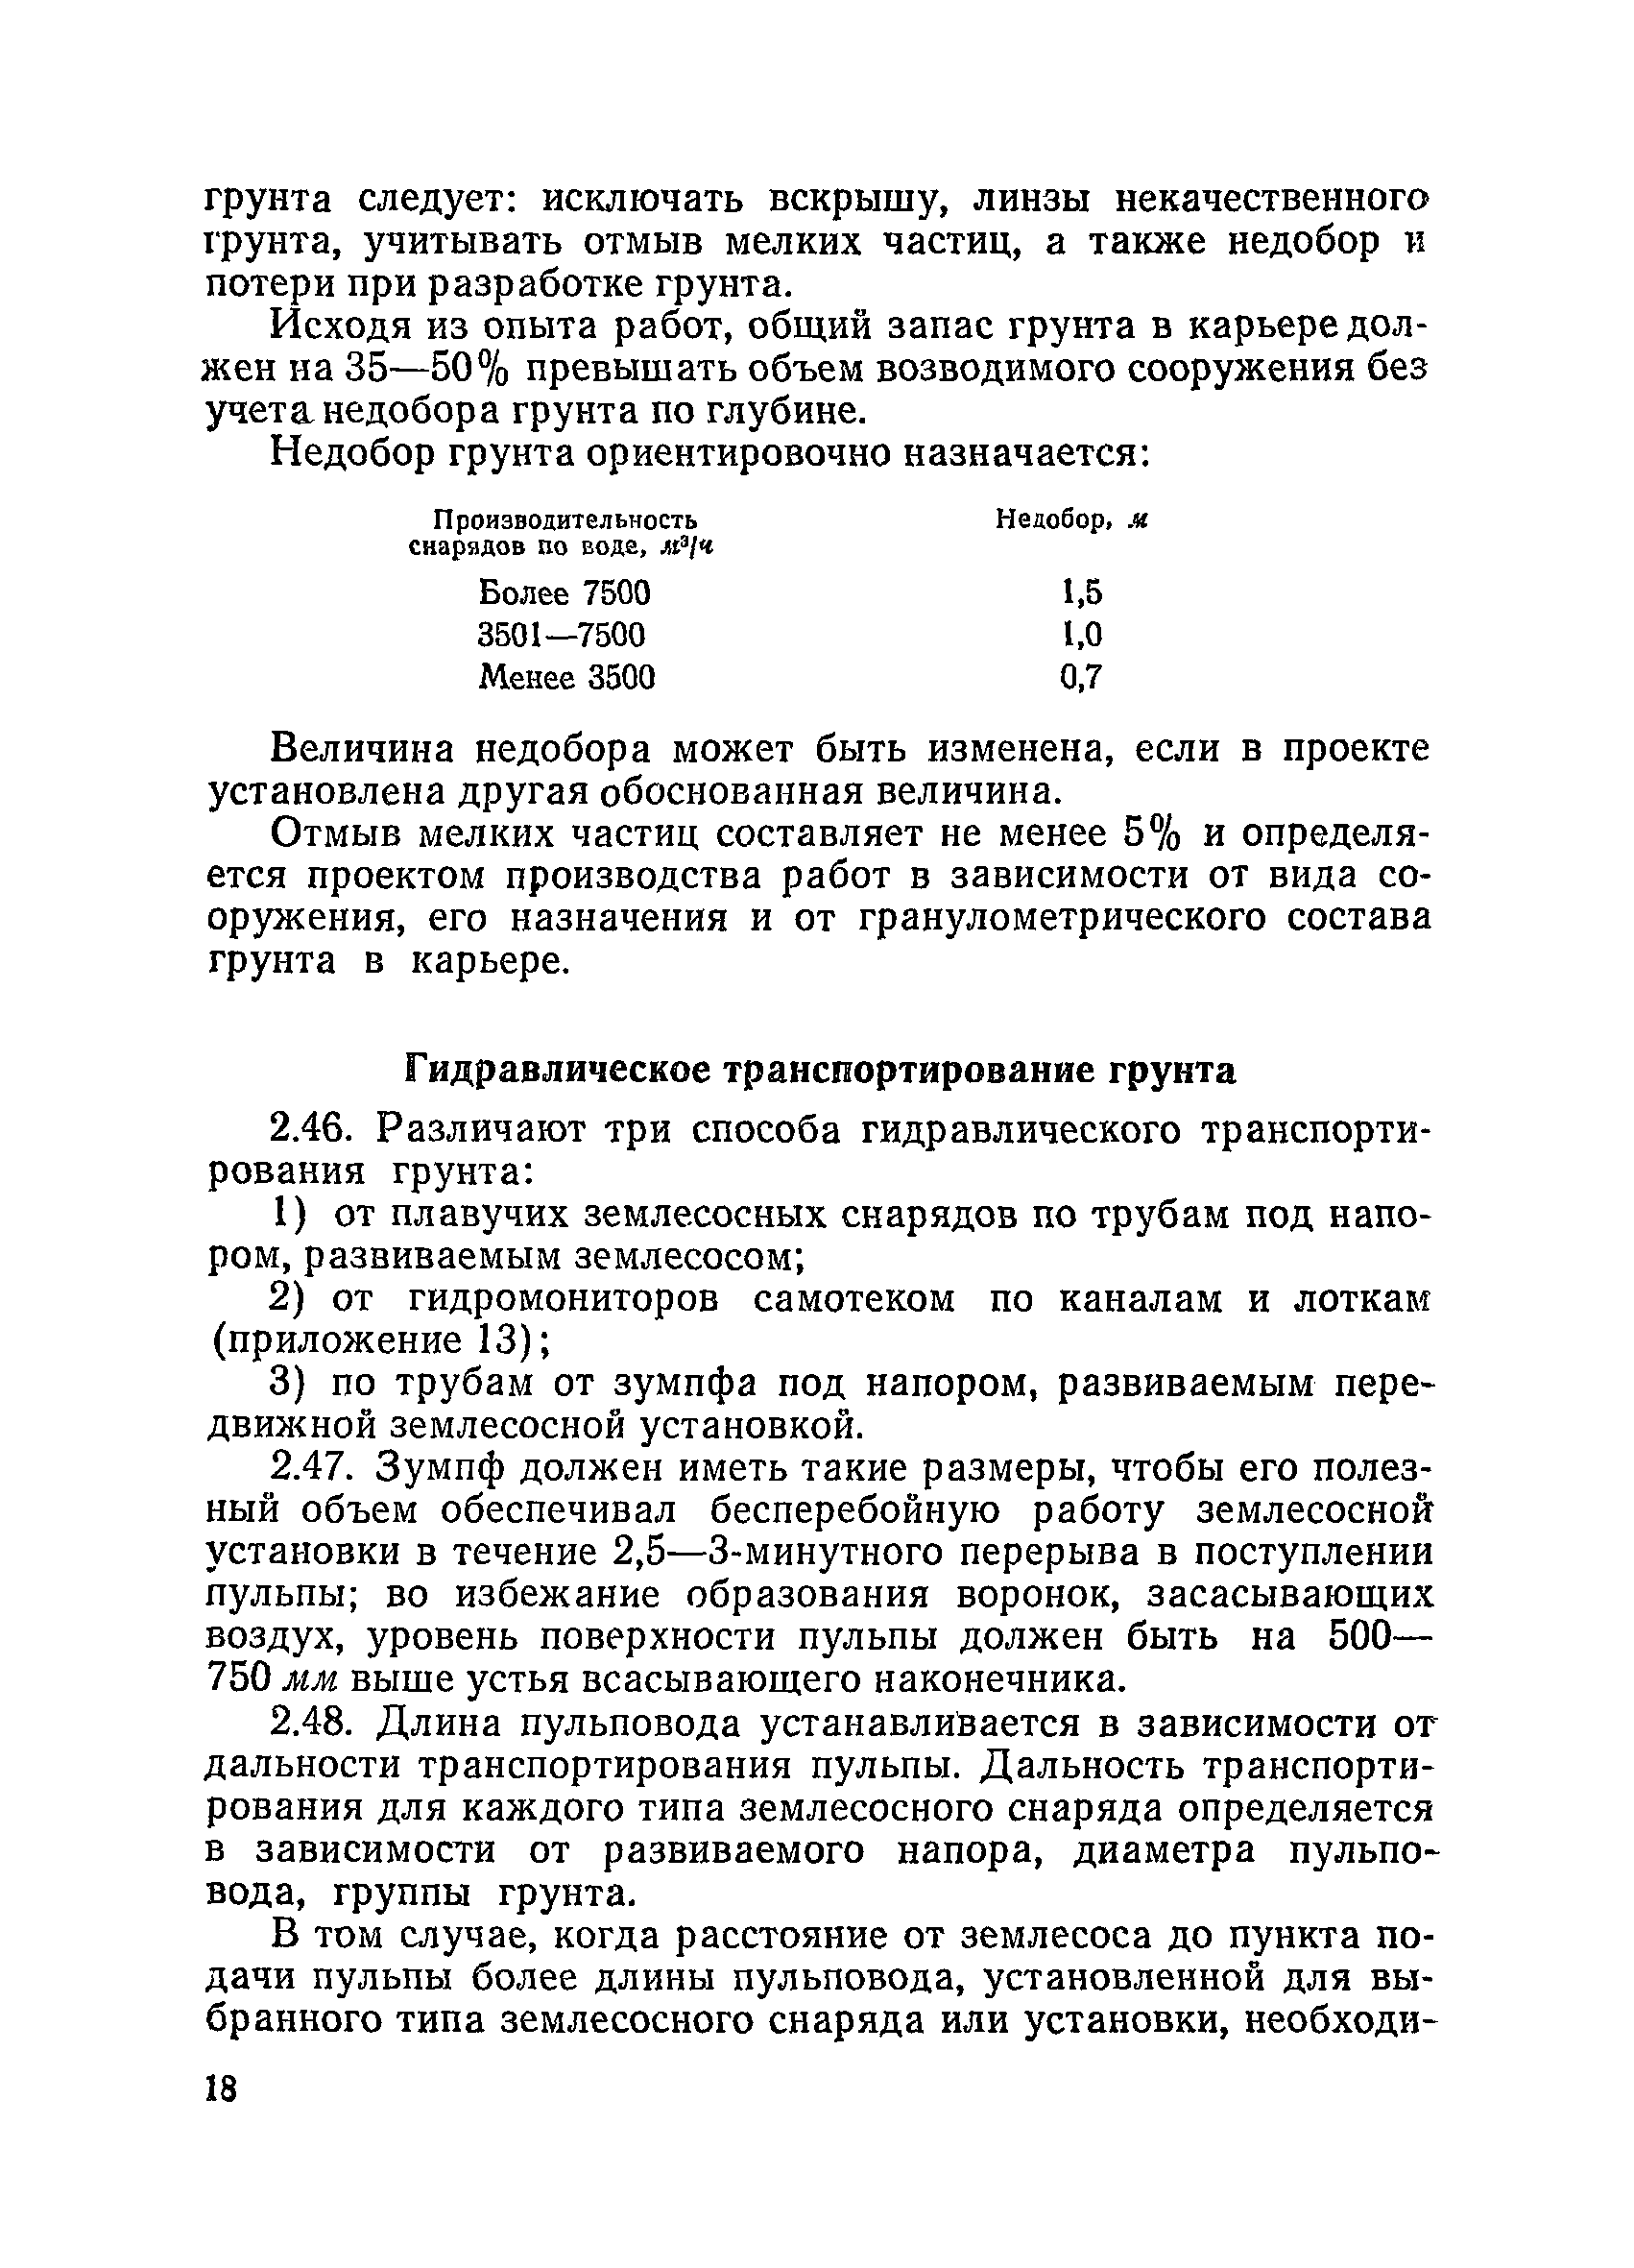 ВСН 34/III-72